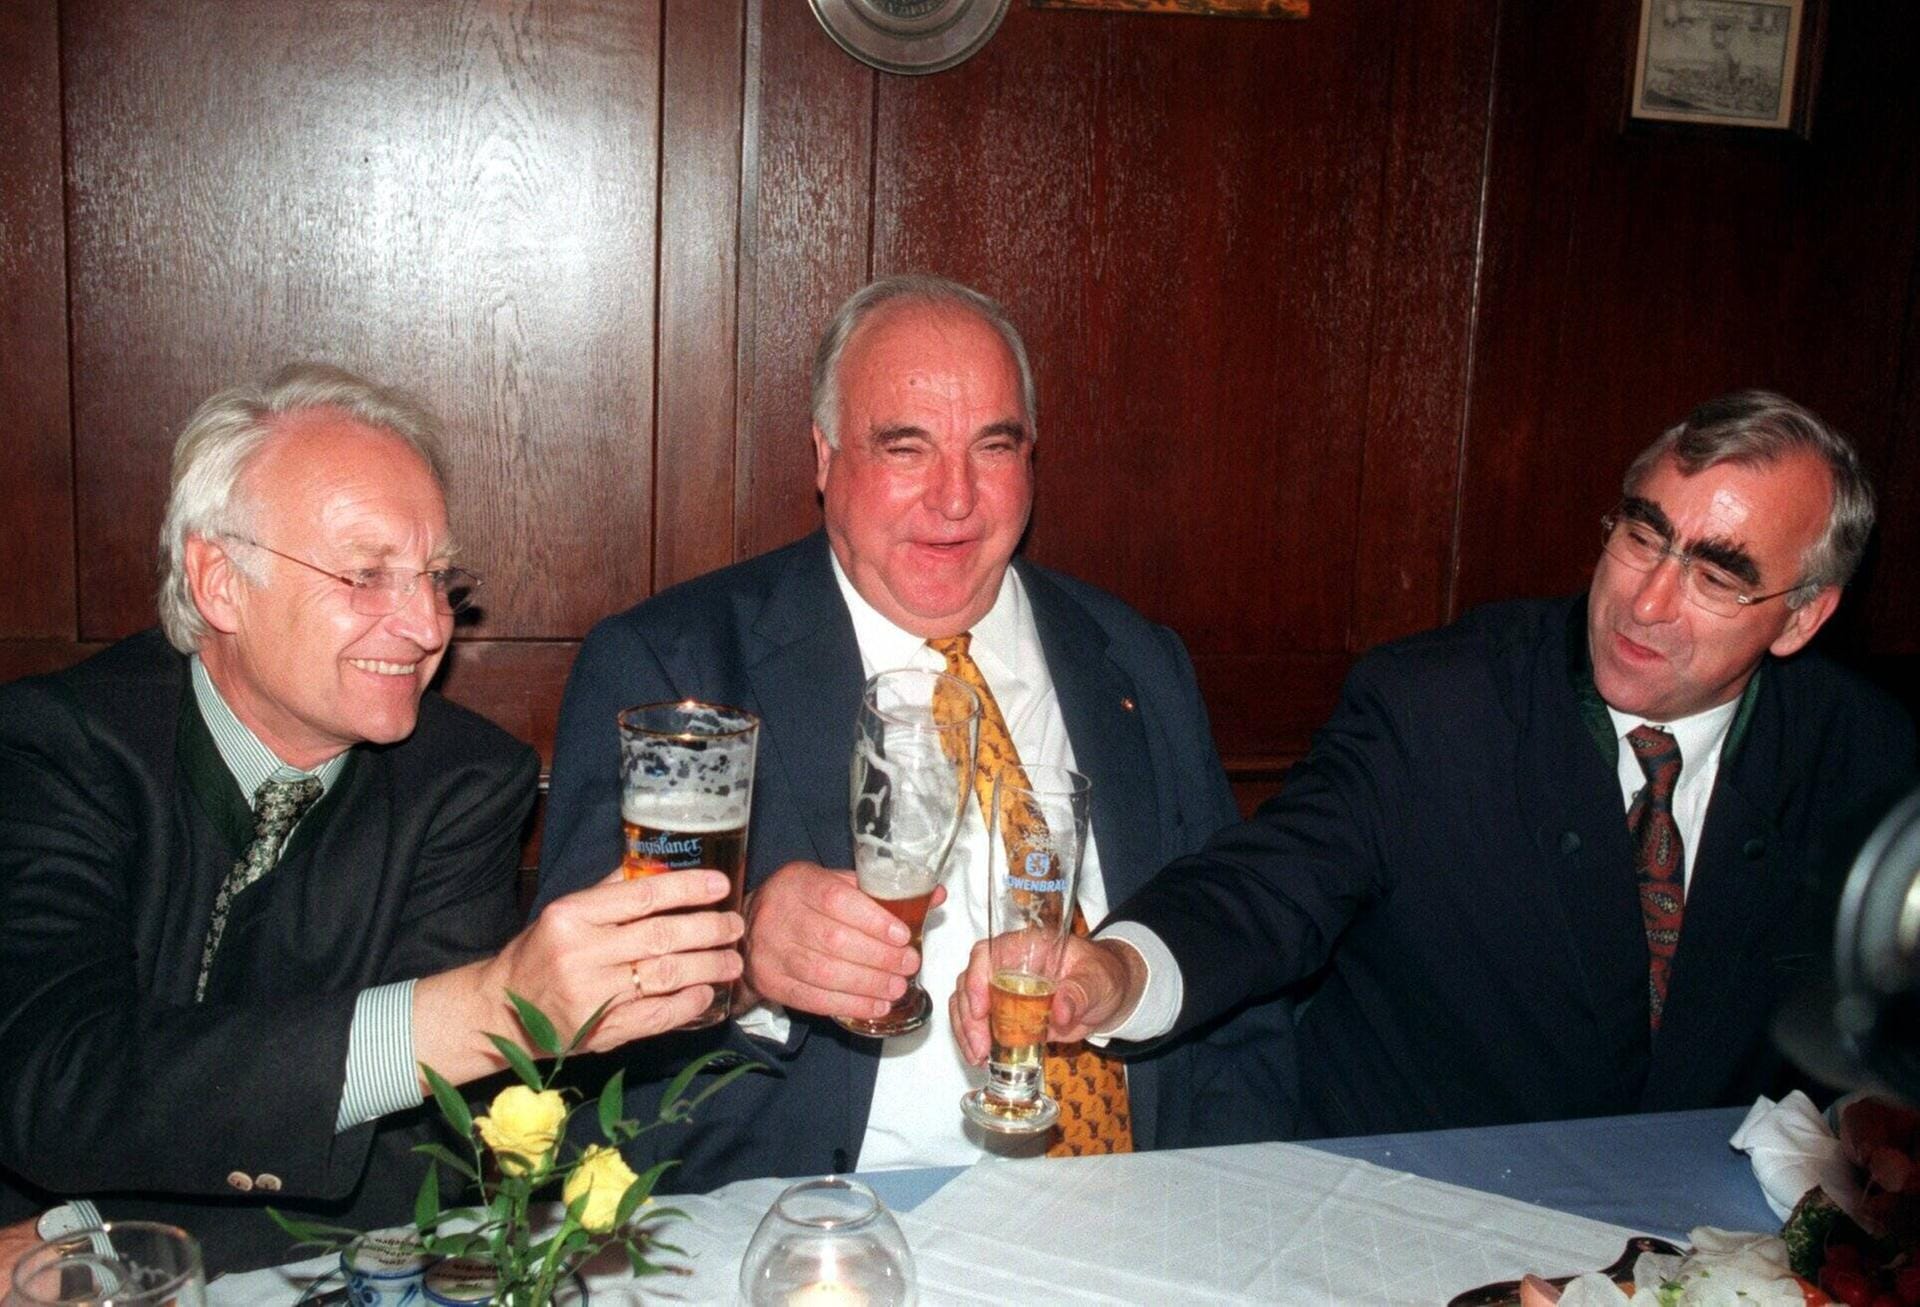 1998: Der bayerische Ministerpräsident Edmund Stoiber (CSU), Bundeskanzler Helmut Kohl (CDU) und Finanzminister Theo Waigel (CSU) prosten sich im Bundestagswahlkampf zu.